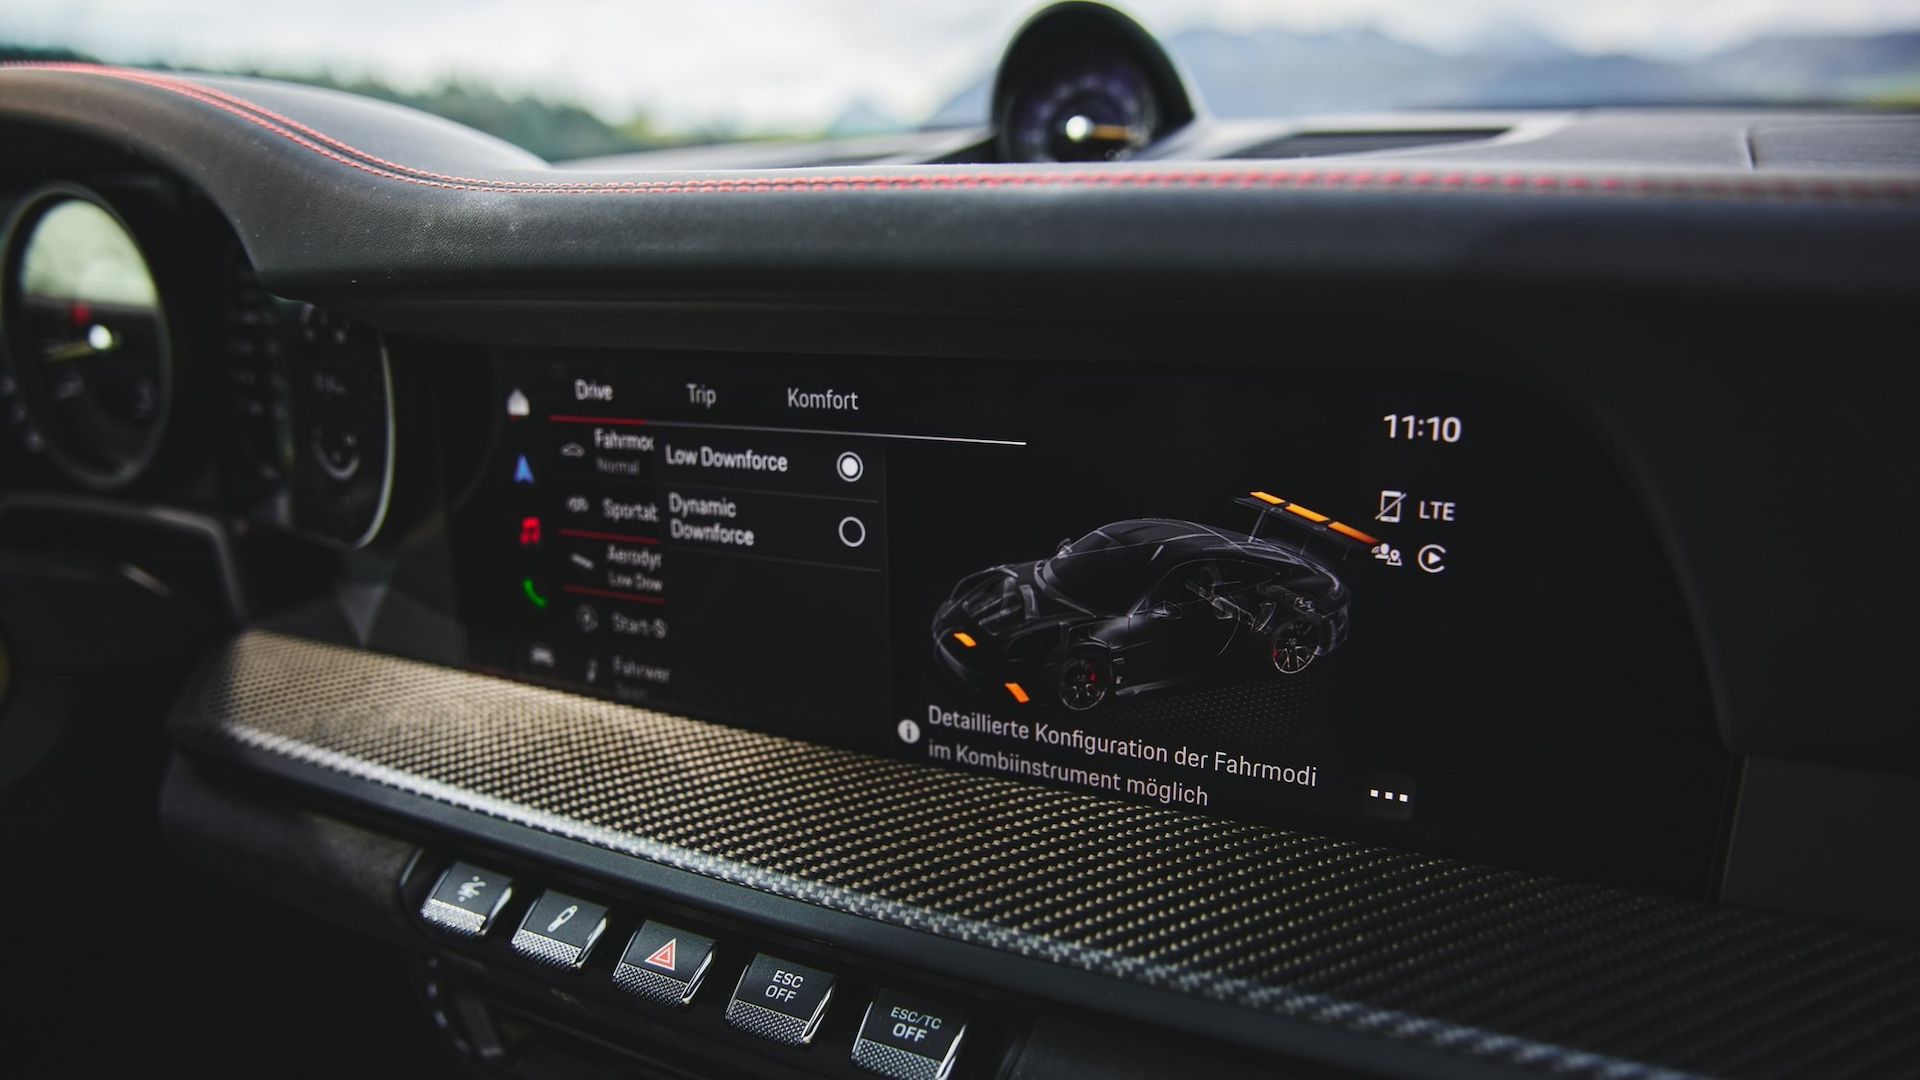 2023 款保时捷 911 GT3 RS 上的信息娱乐屏幕